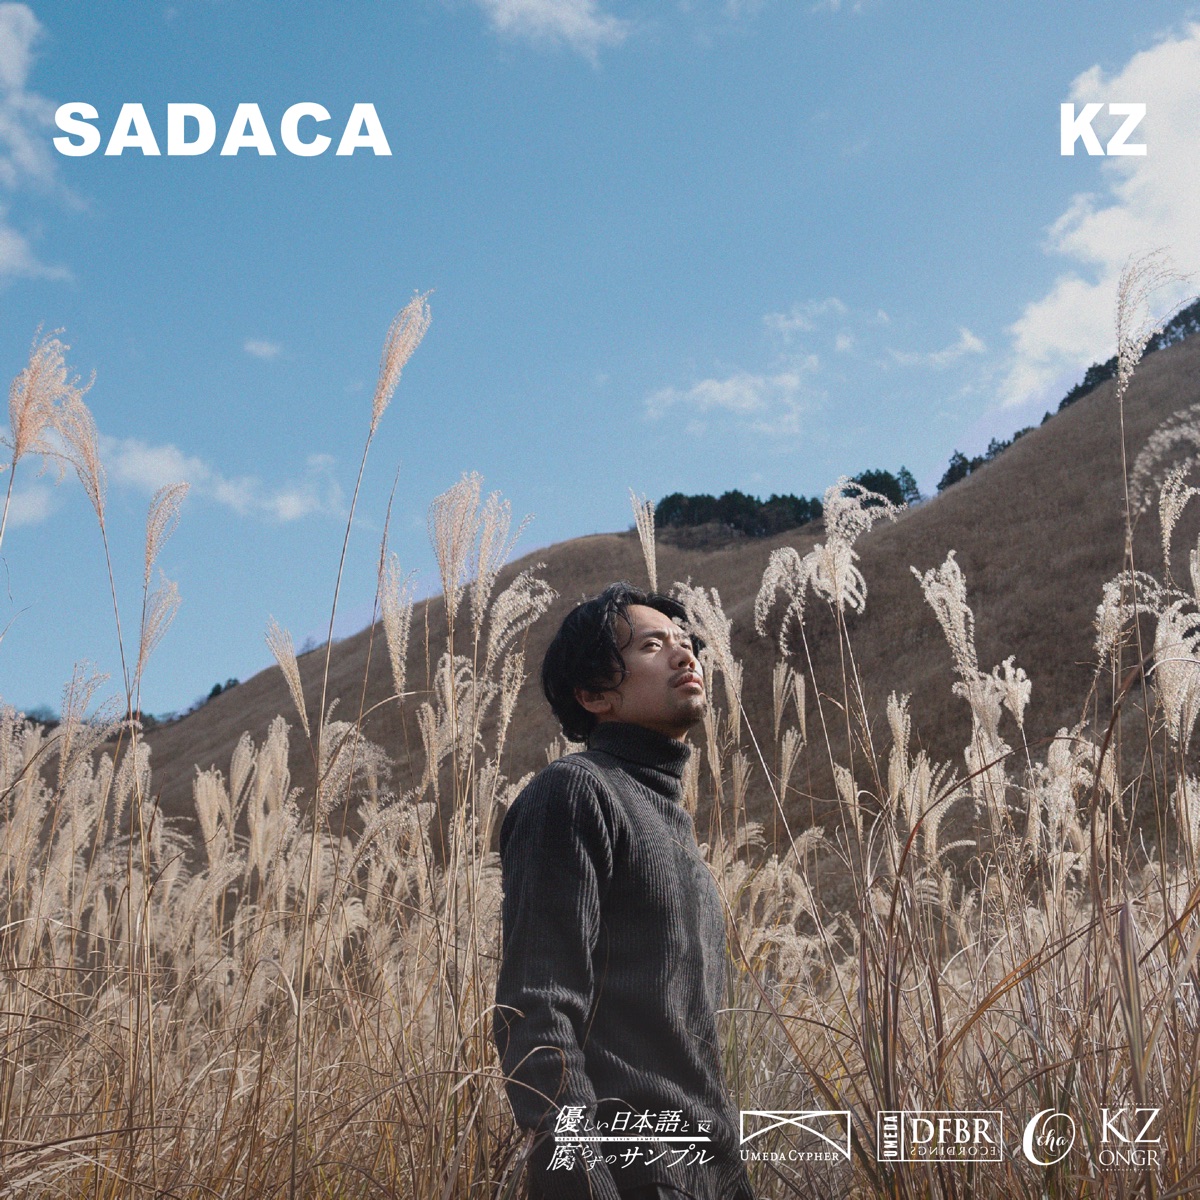 『KZ - こえてわかりだした』収録の『SADACA』ジャケット